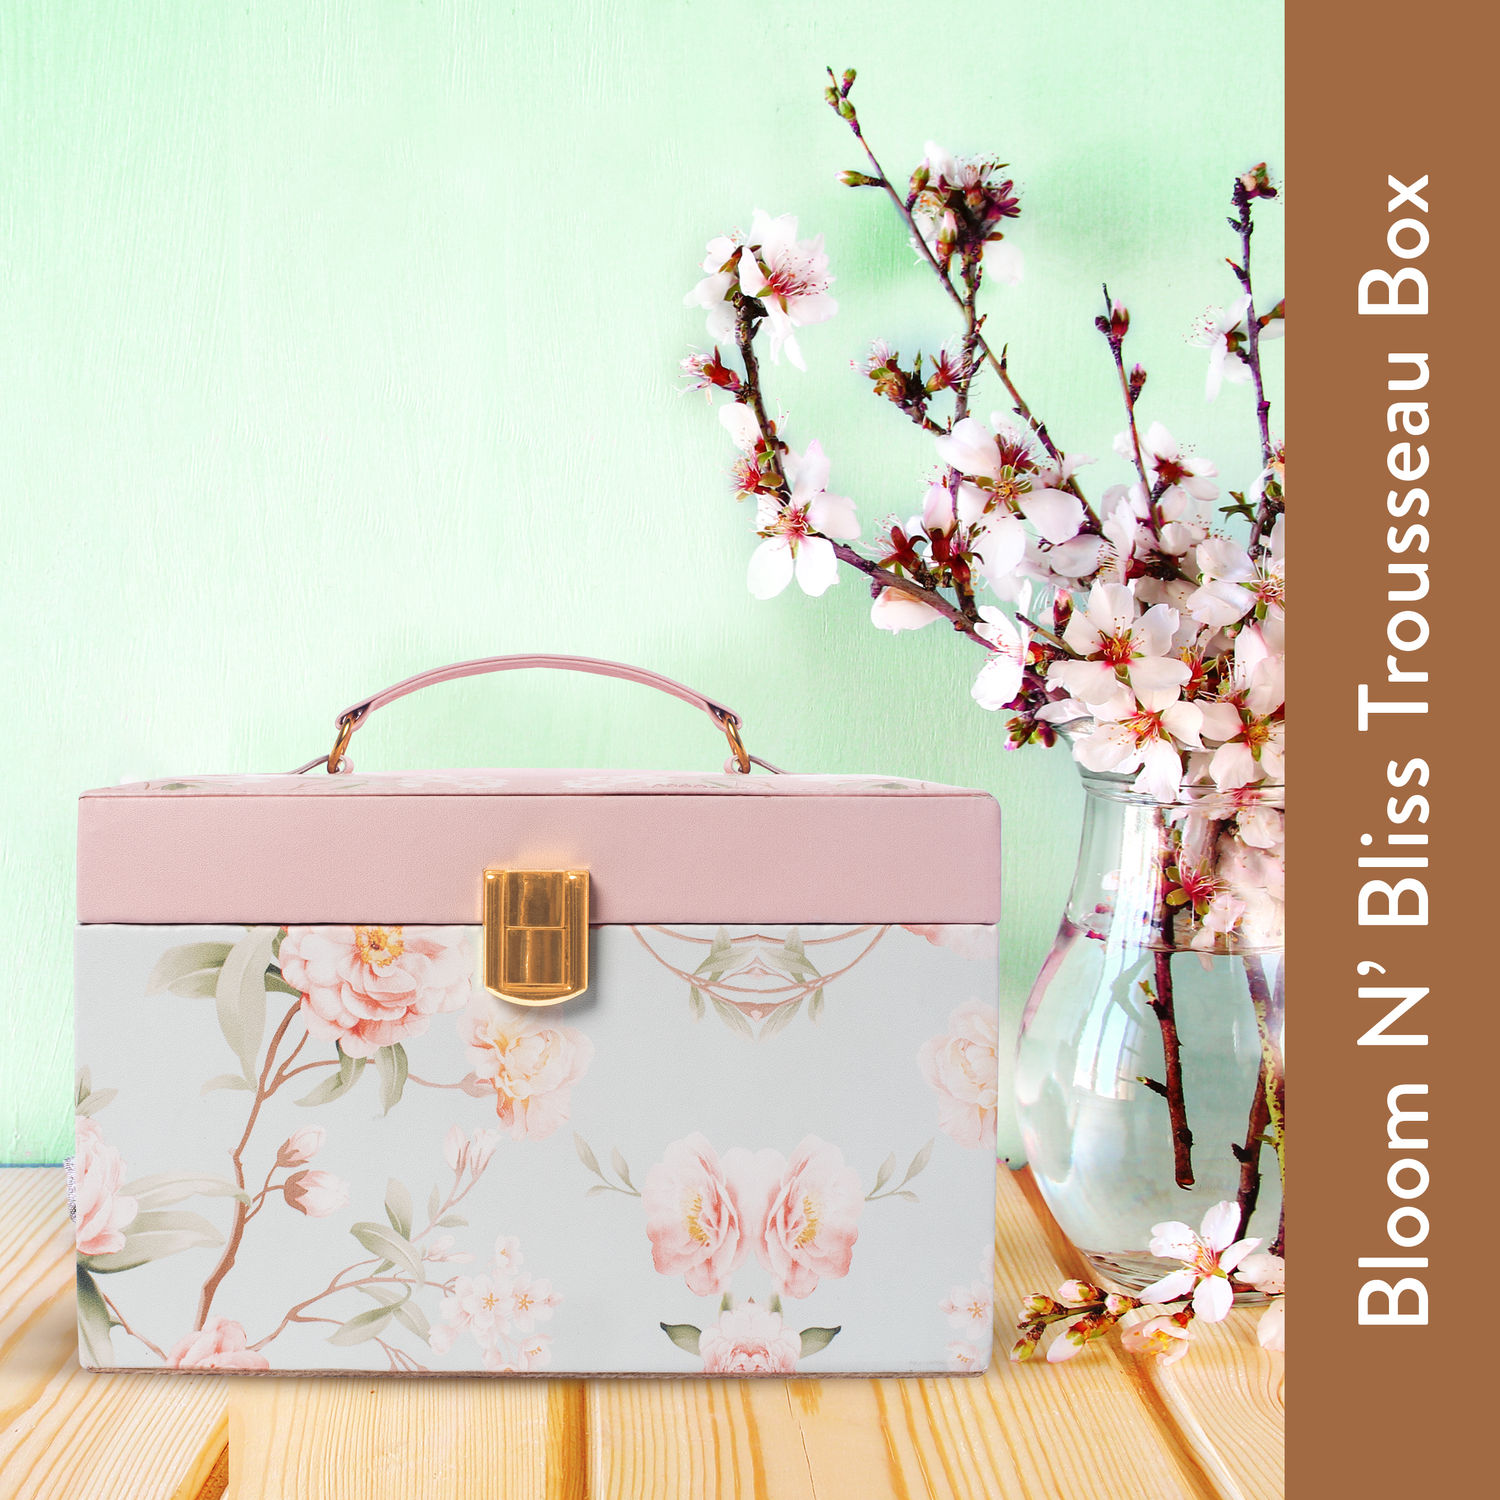 Buy Purplle Bloom N' Bliss Trousseau Box - Purplle